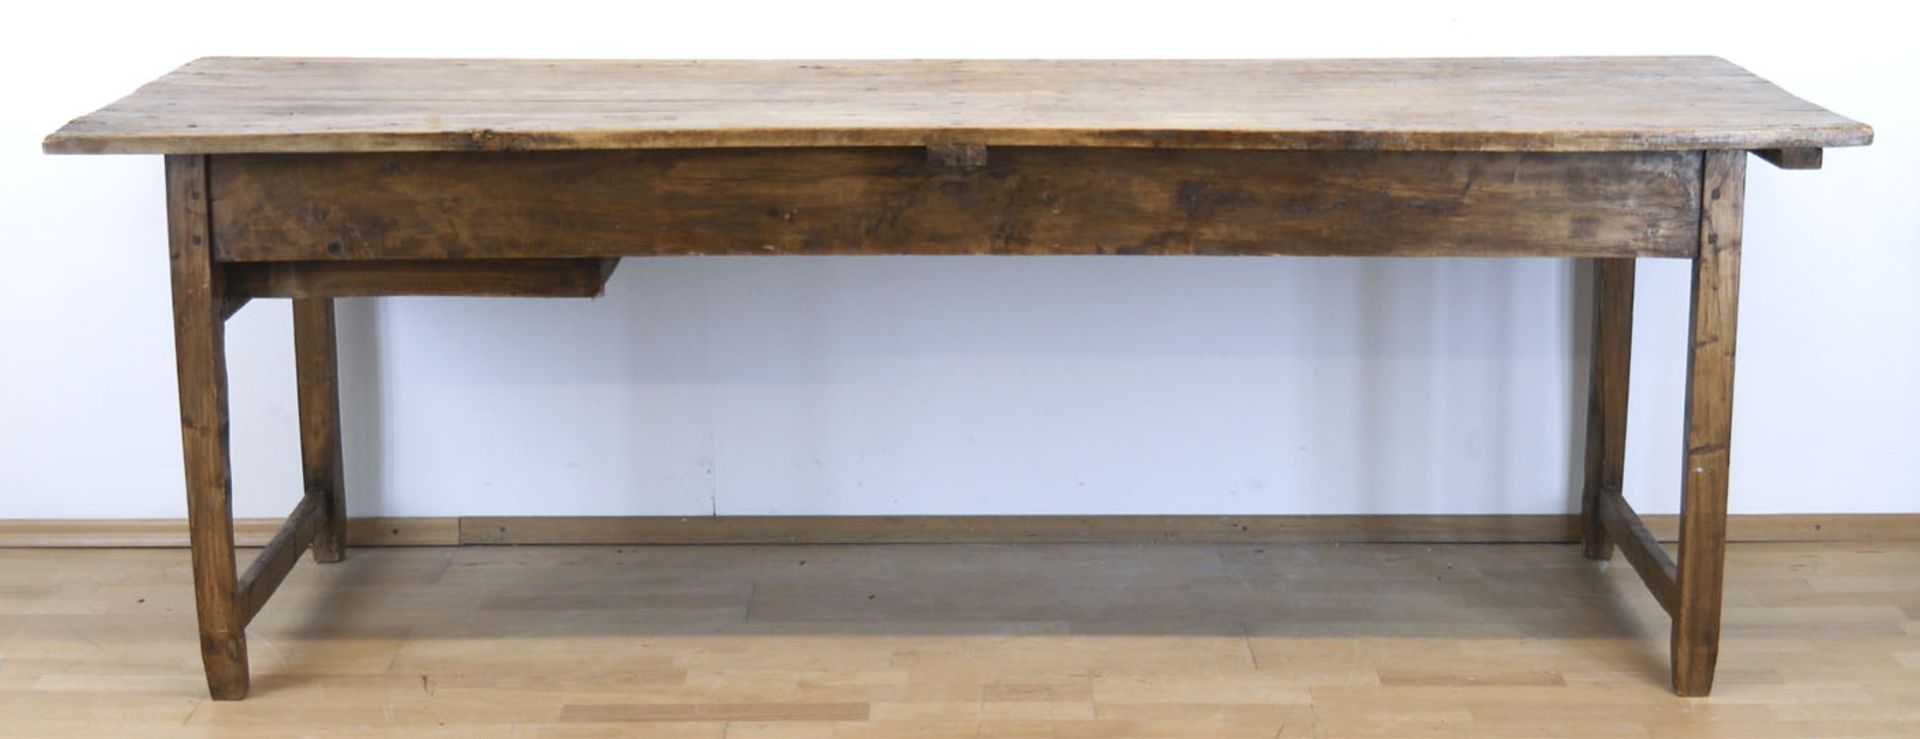 Landhaustisch, Frankreich um 1800, Obstholz, seitlich 1 Schubkasten, Gebrauchspuren, 77x233x7